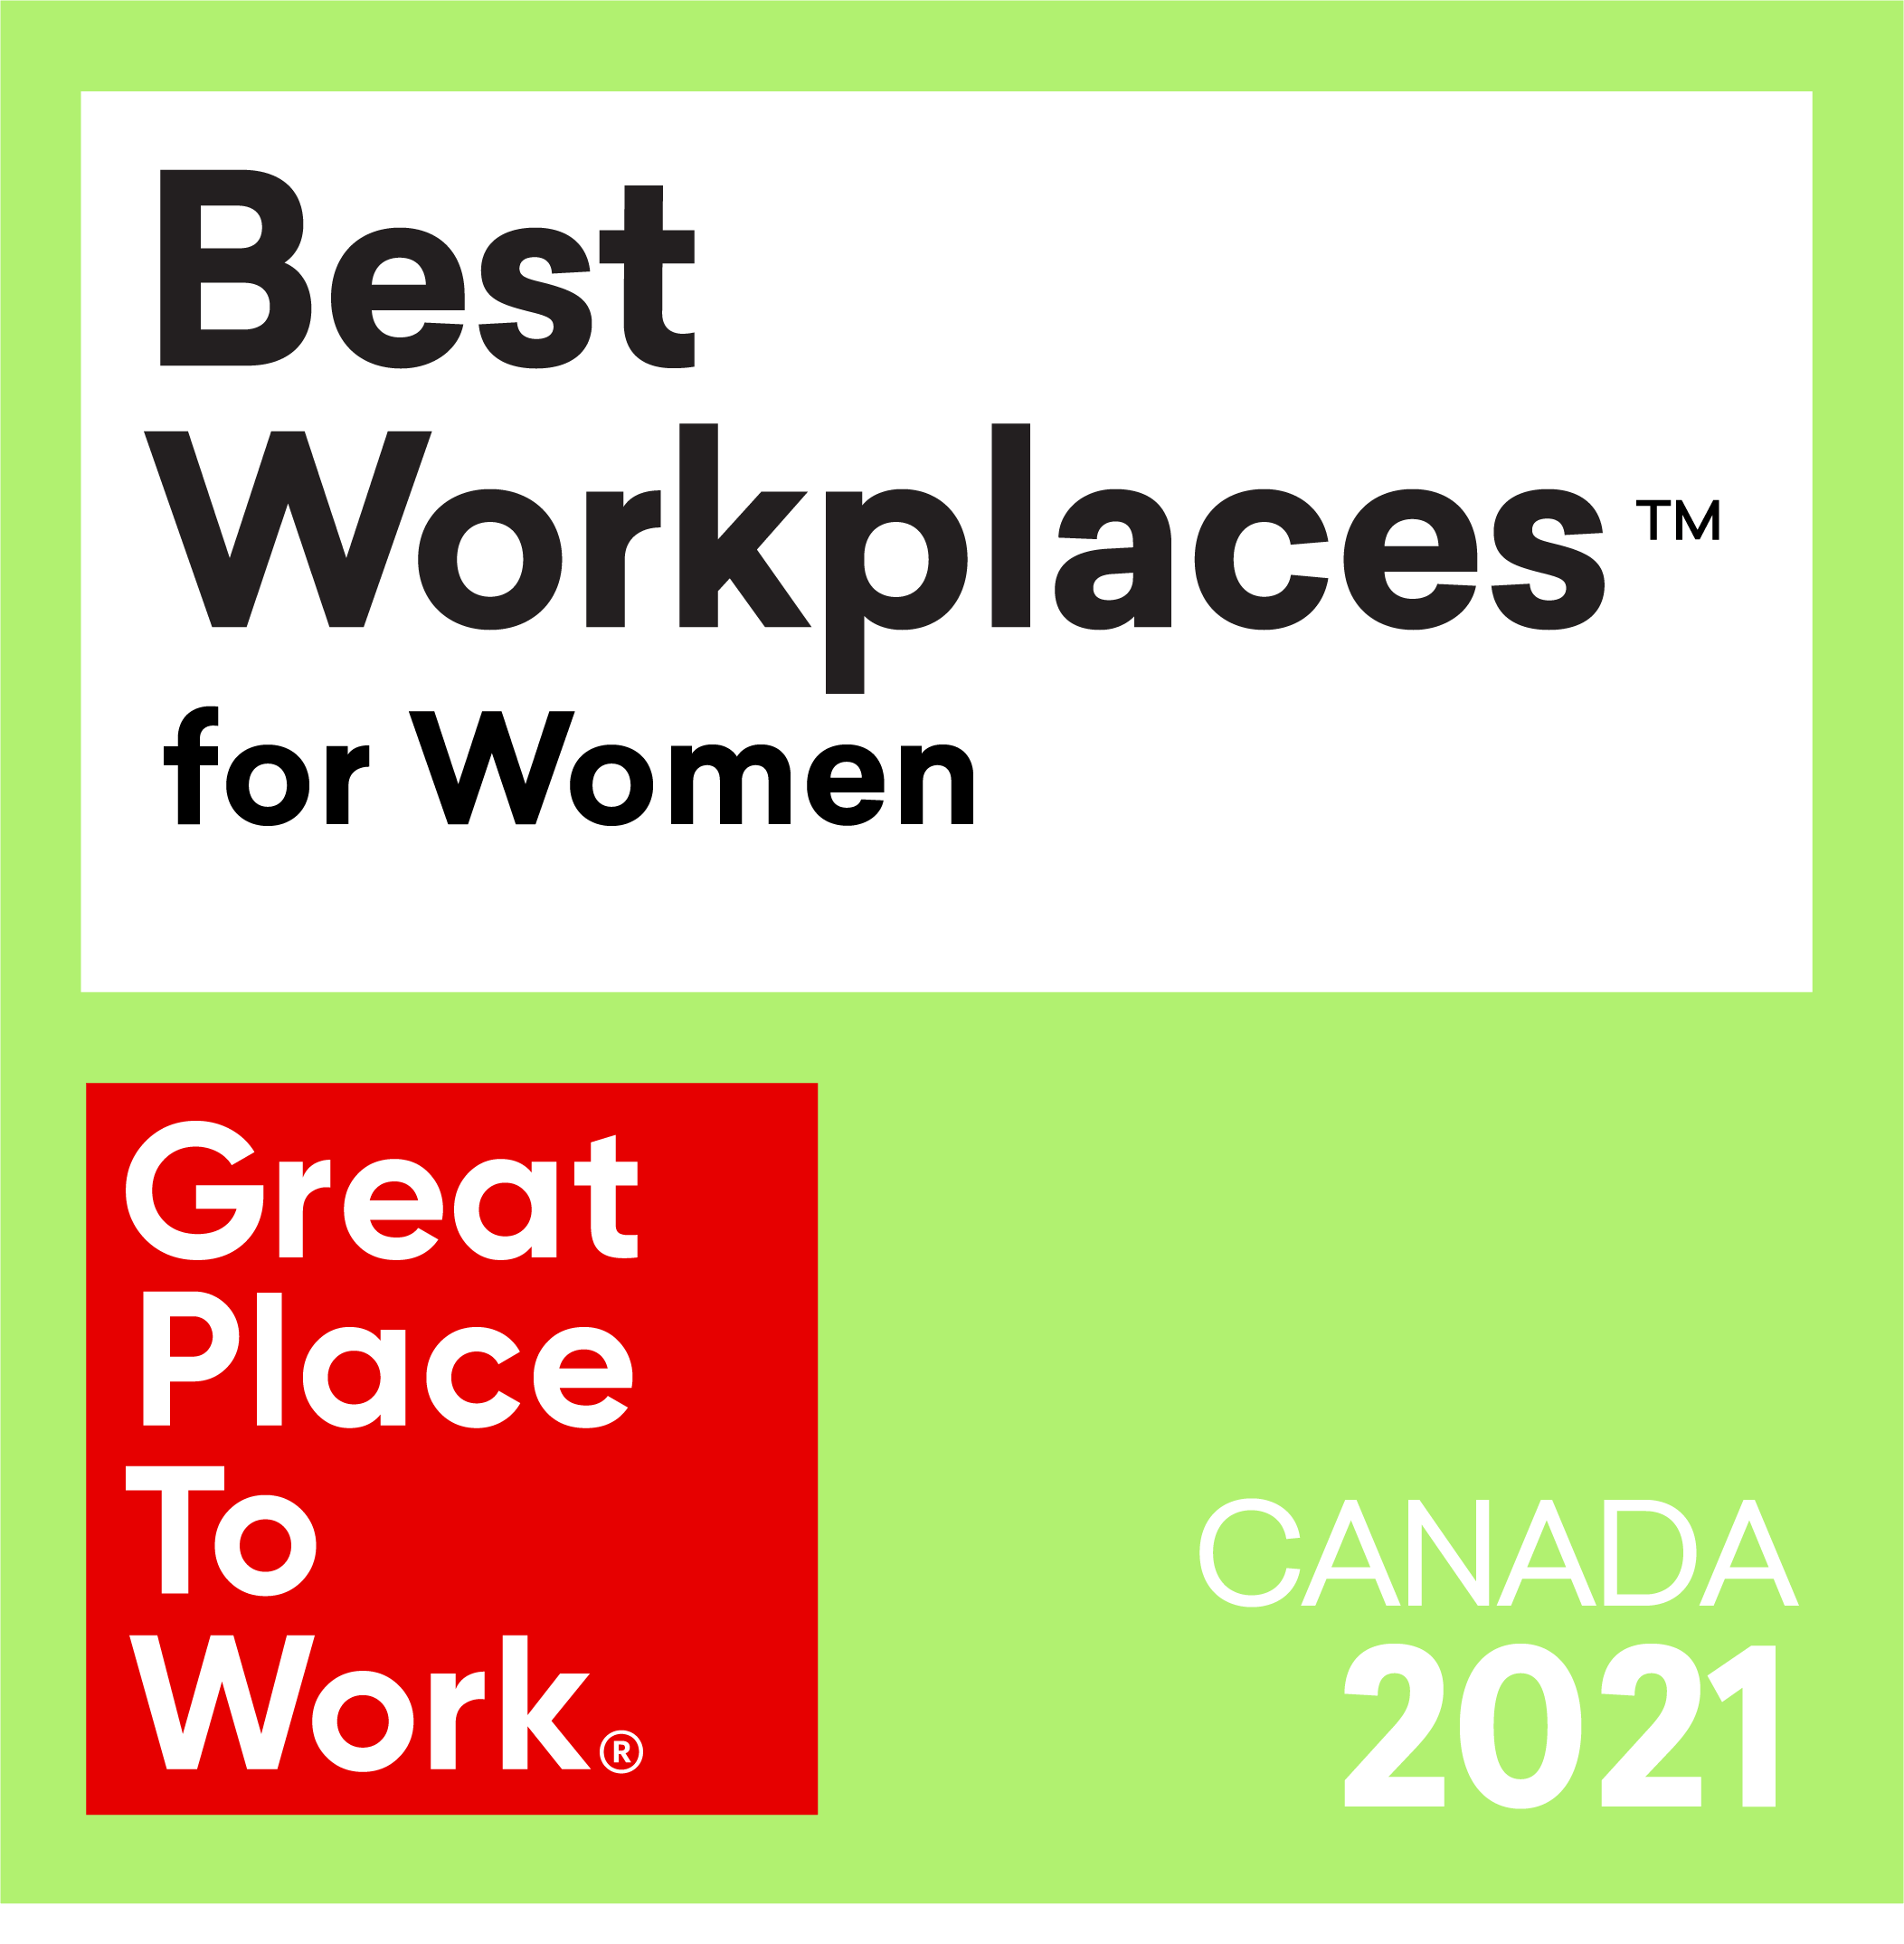 Best workplace for women 2021 award